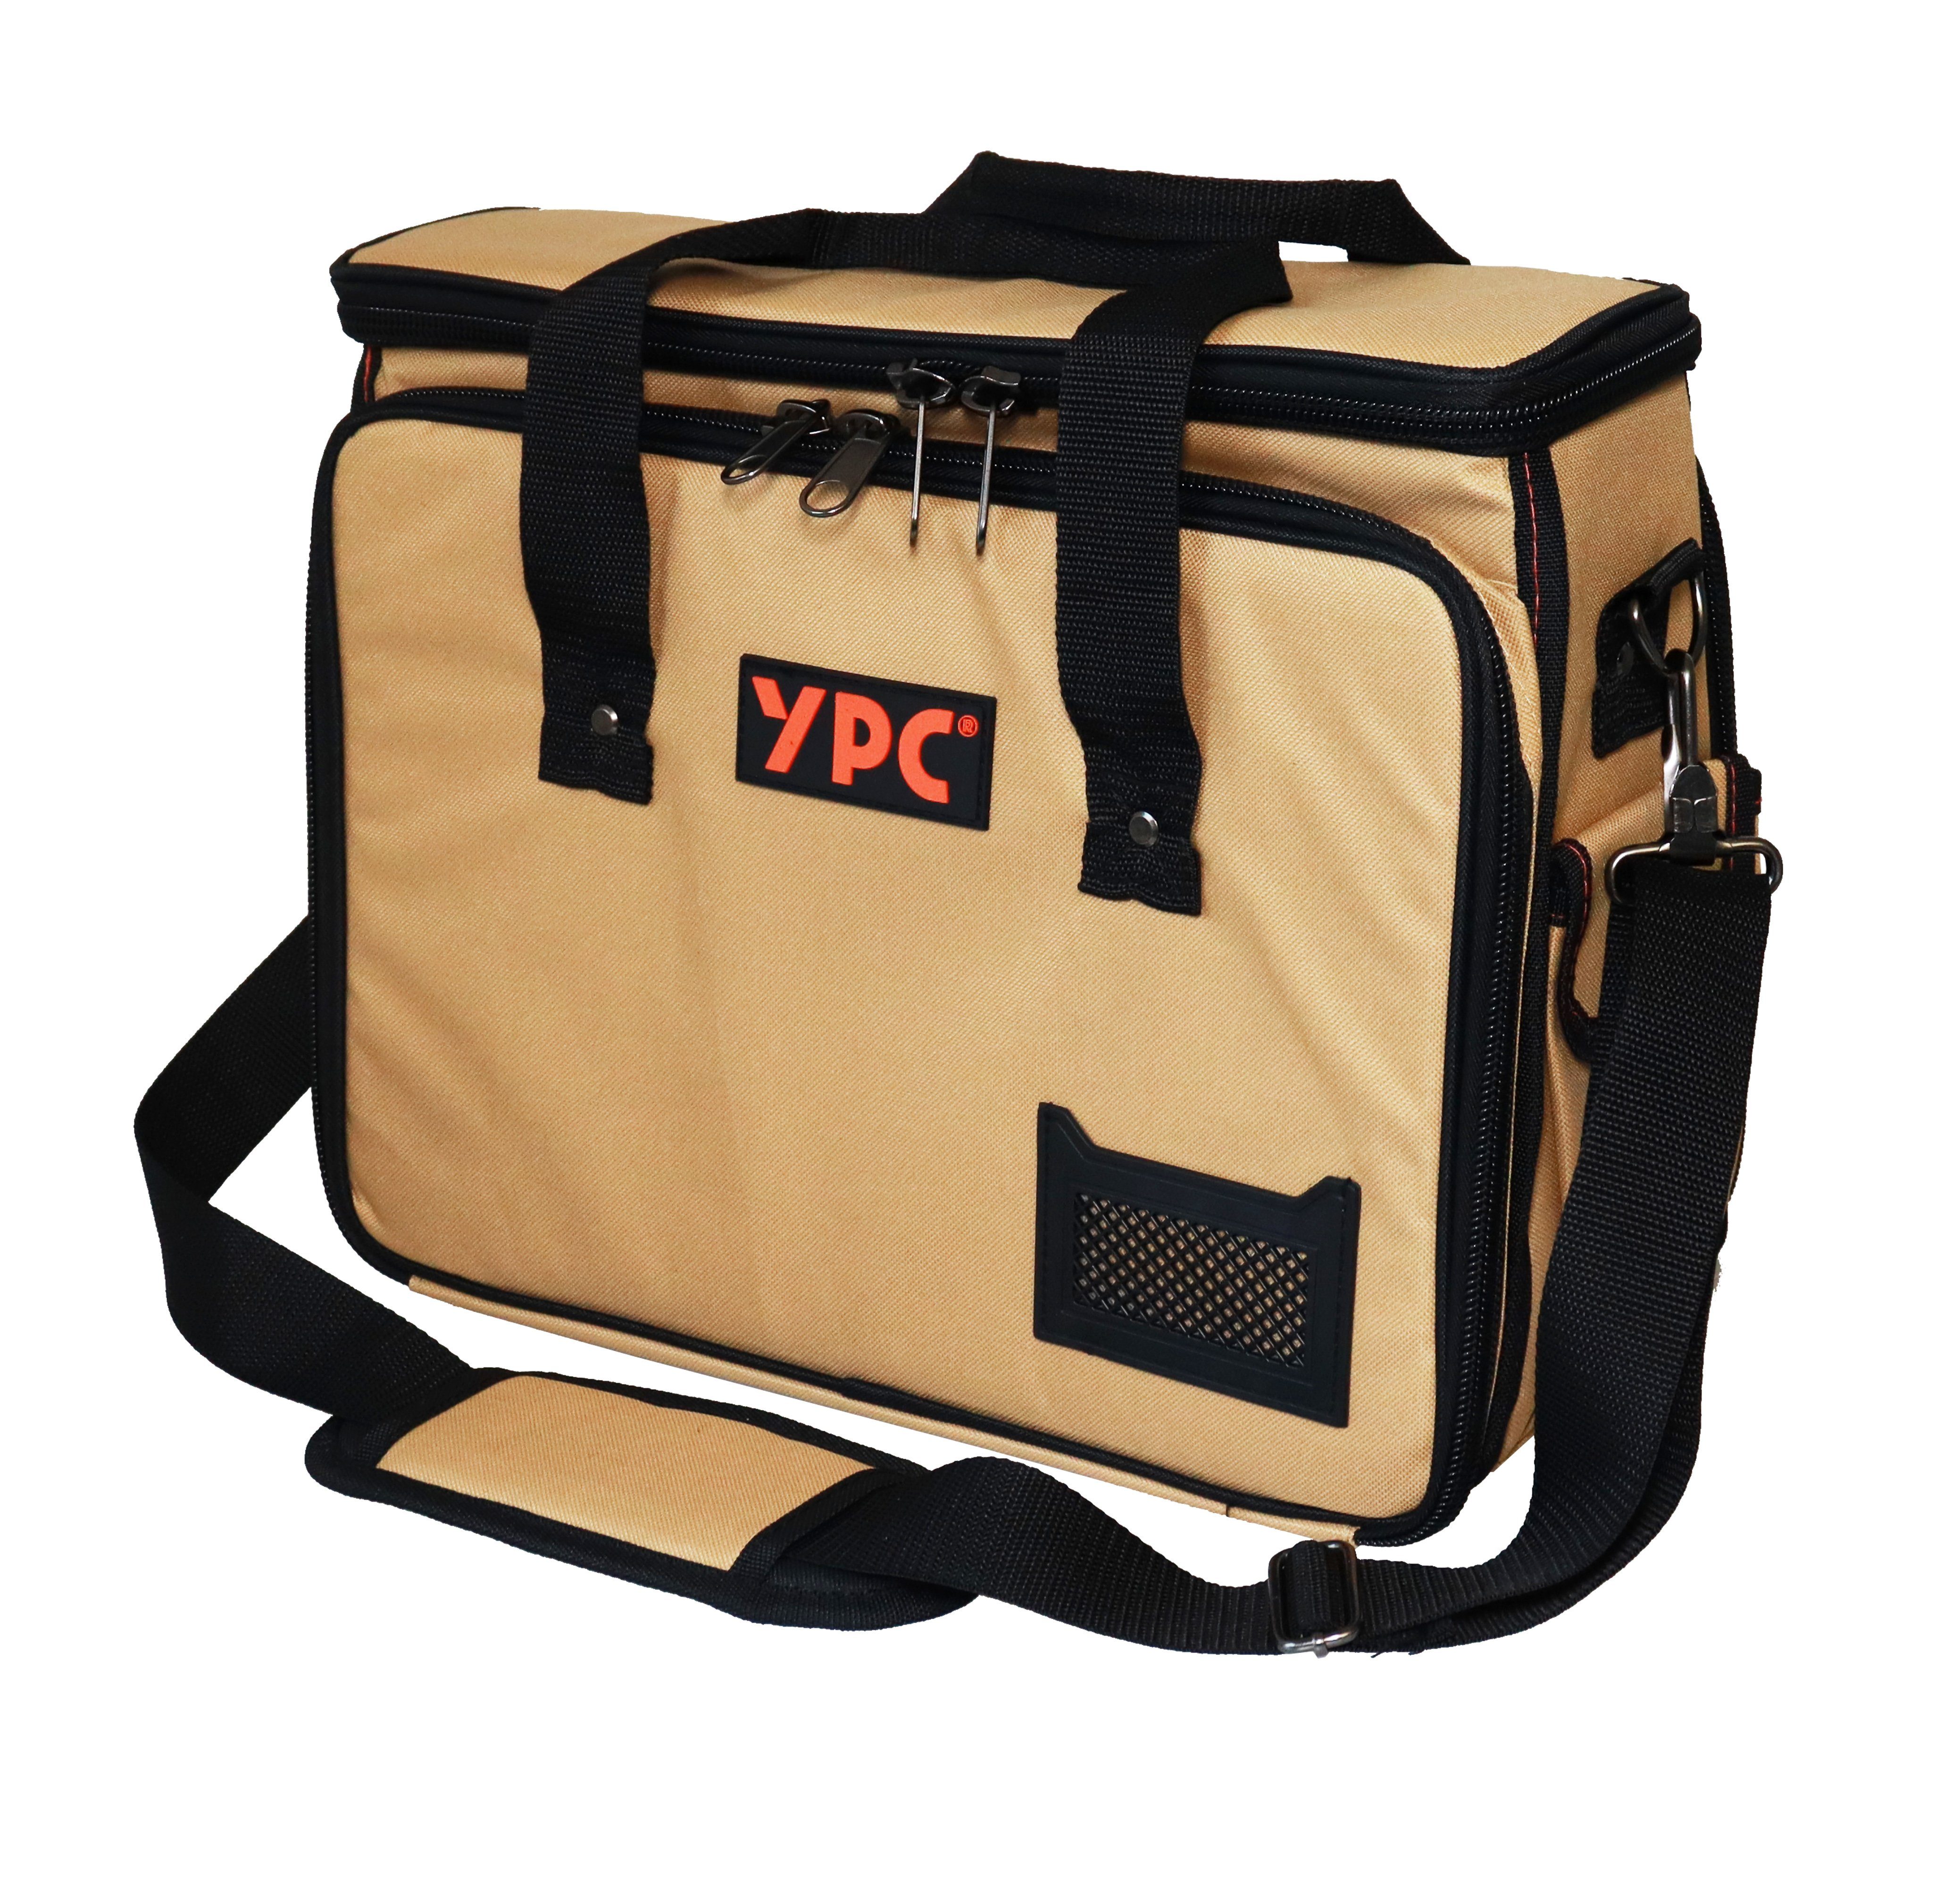 YPC Werkzeugtasche "Operator" Werkzeugtasche XL, 40x32x20cm, 20 kg Tragkraft, Umhängetasche, Tragetasche für Werkzeug mit Haltern, Fächern und Einschüben Beige